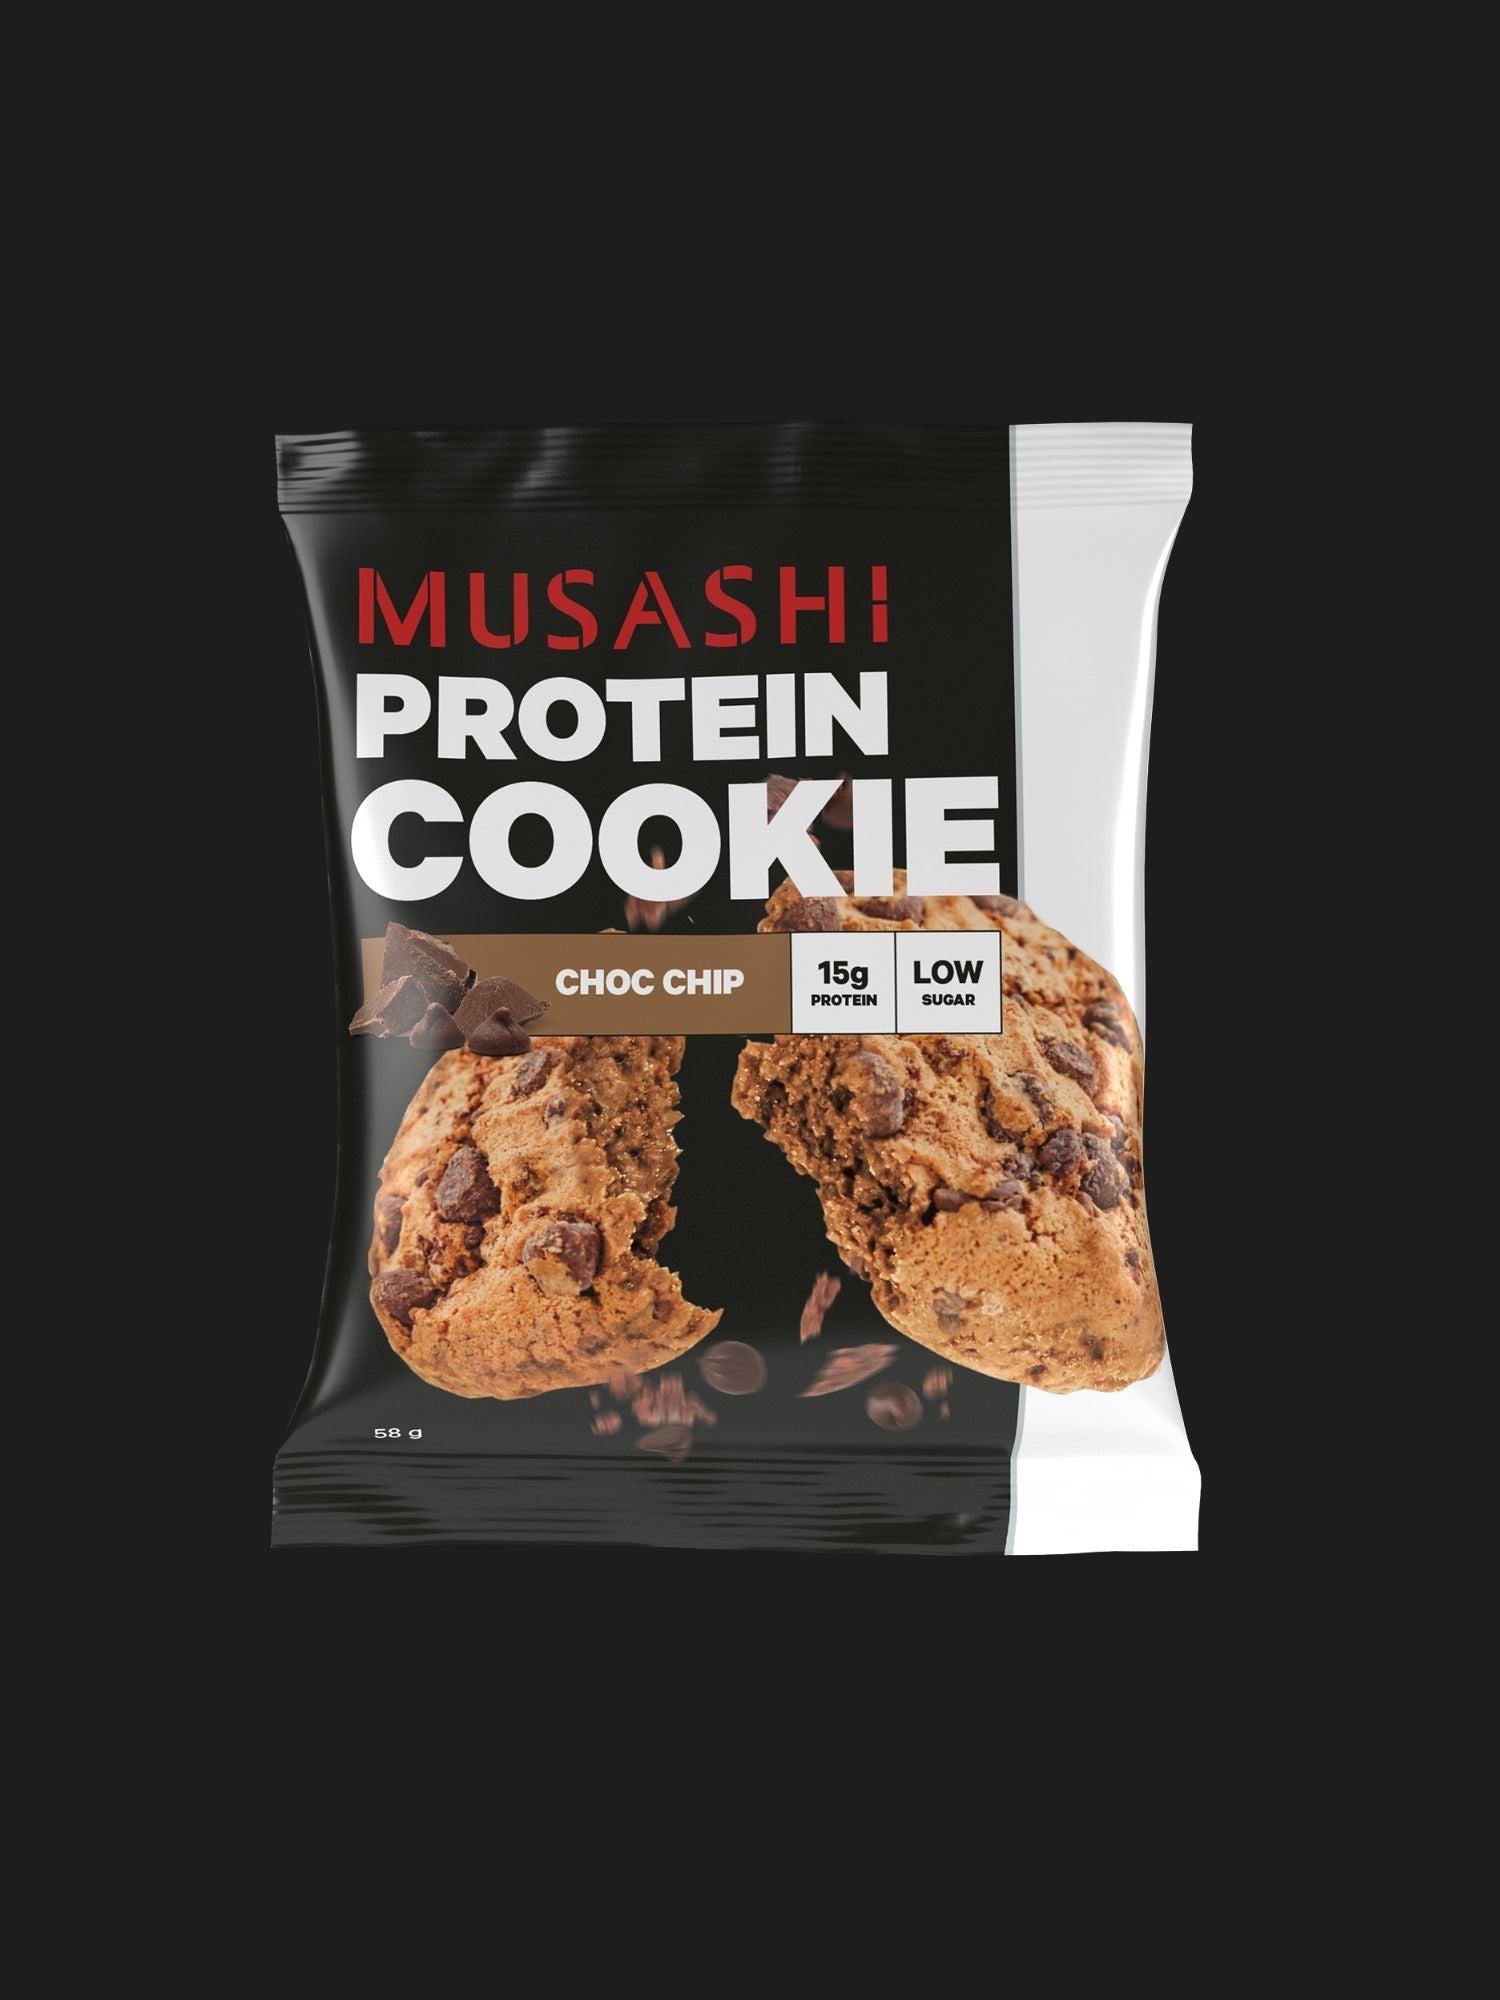 Musashi-Protein-Cookie-Choc-Chip-58g